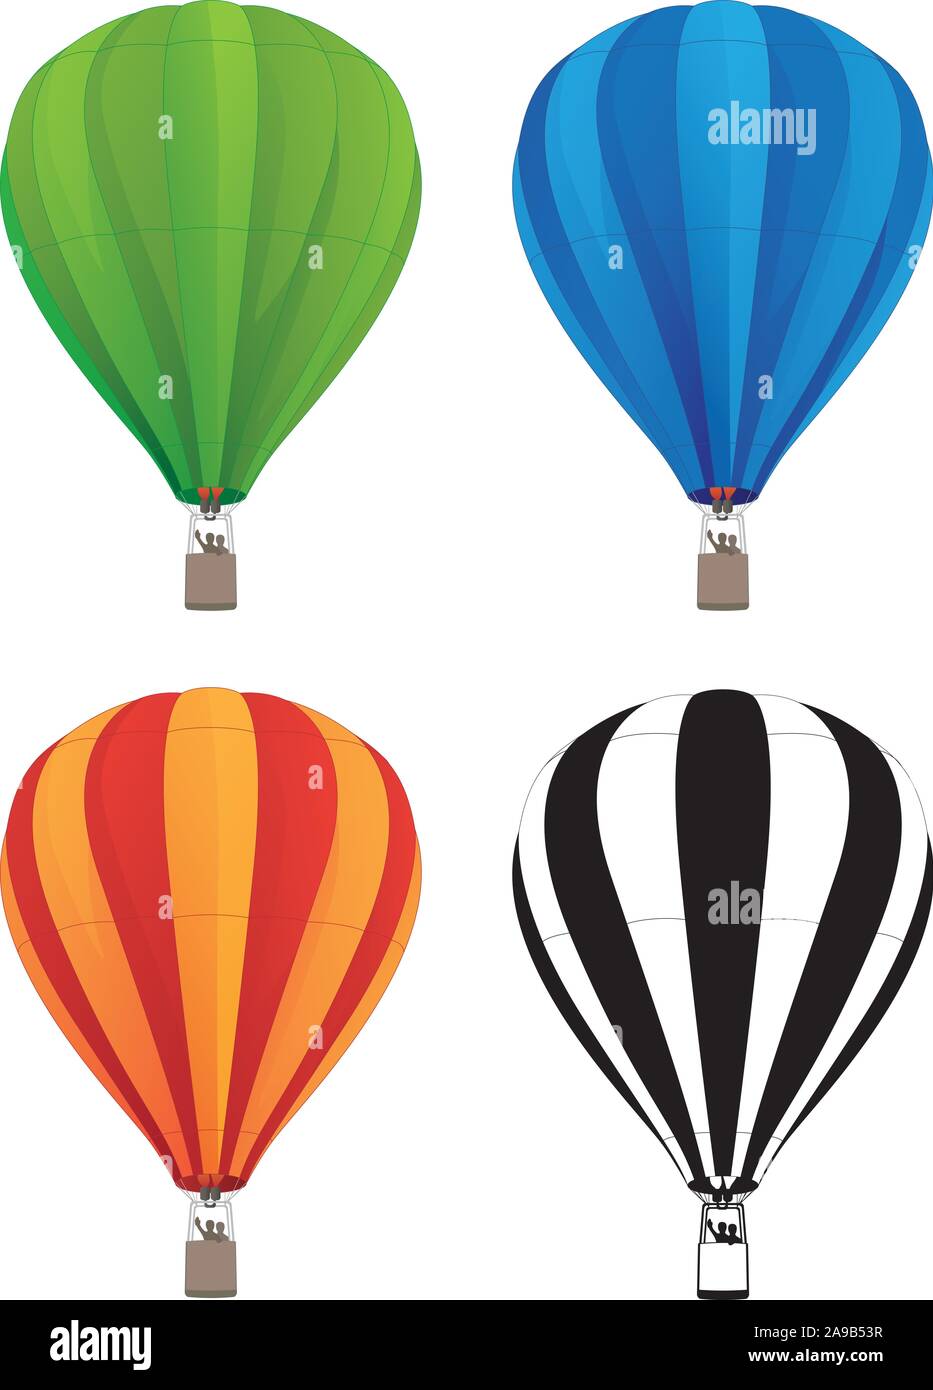 Hot Air Balloon in Grün, Blau, Rot, Orange und schwarze Linie Kunst, isolierte Vector Illustration Stock Vektor